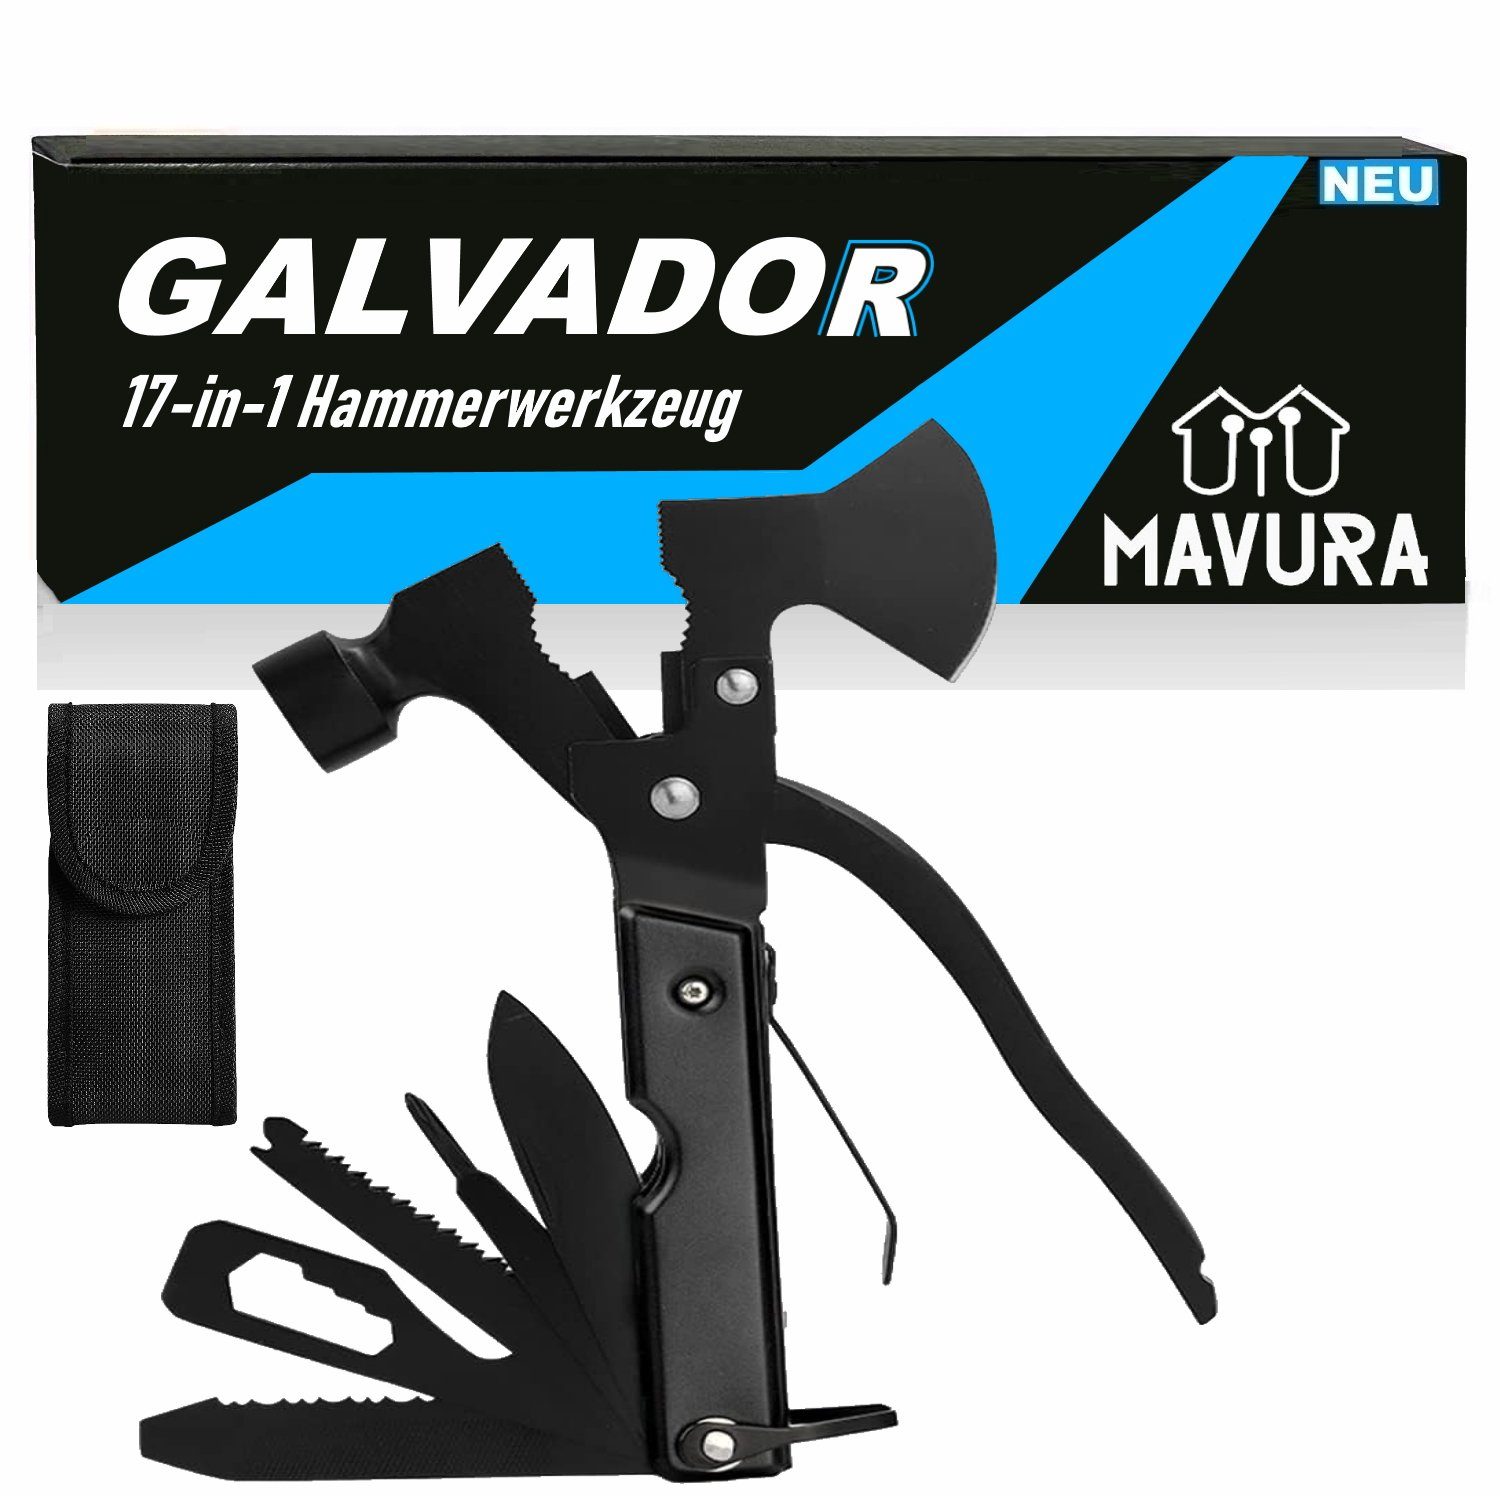 MAVURA Multifunktionswerkzeug Zange 17in1 Messer Schraubendreher GALVADOR Hammer Multitool, Axt Drahtschneider Multitool Bit Taschenmesser